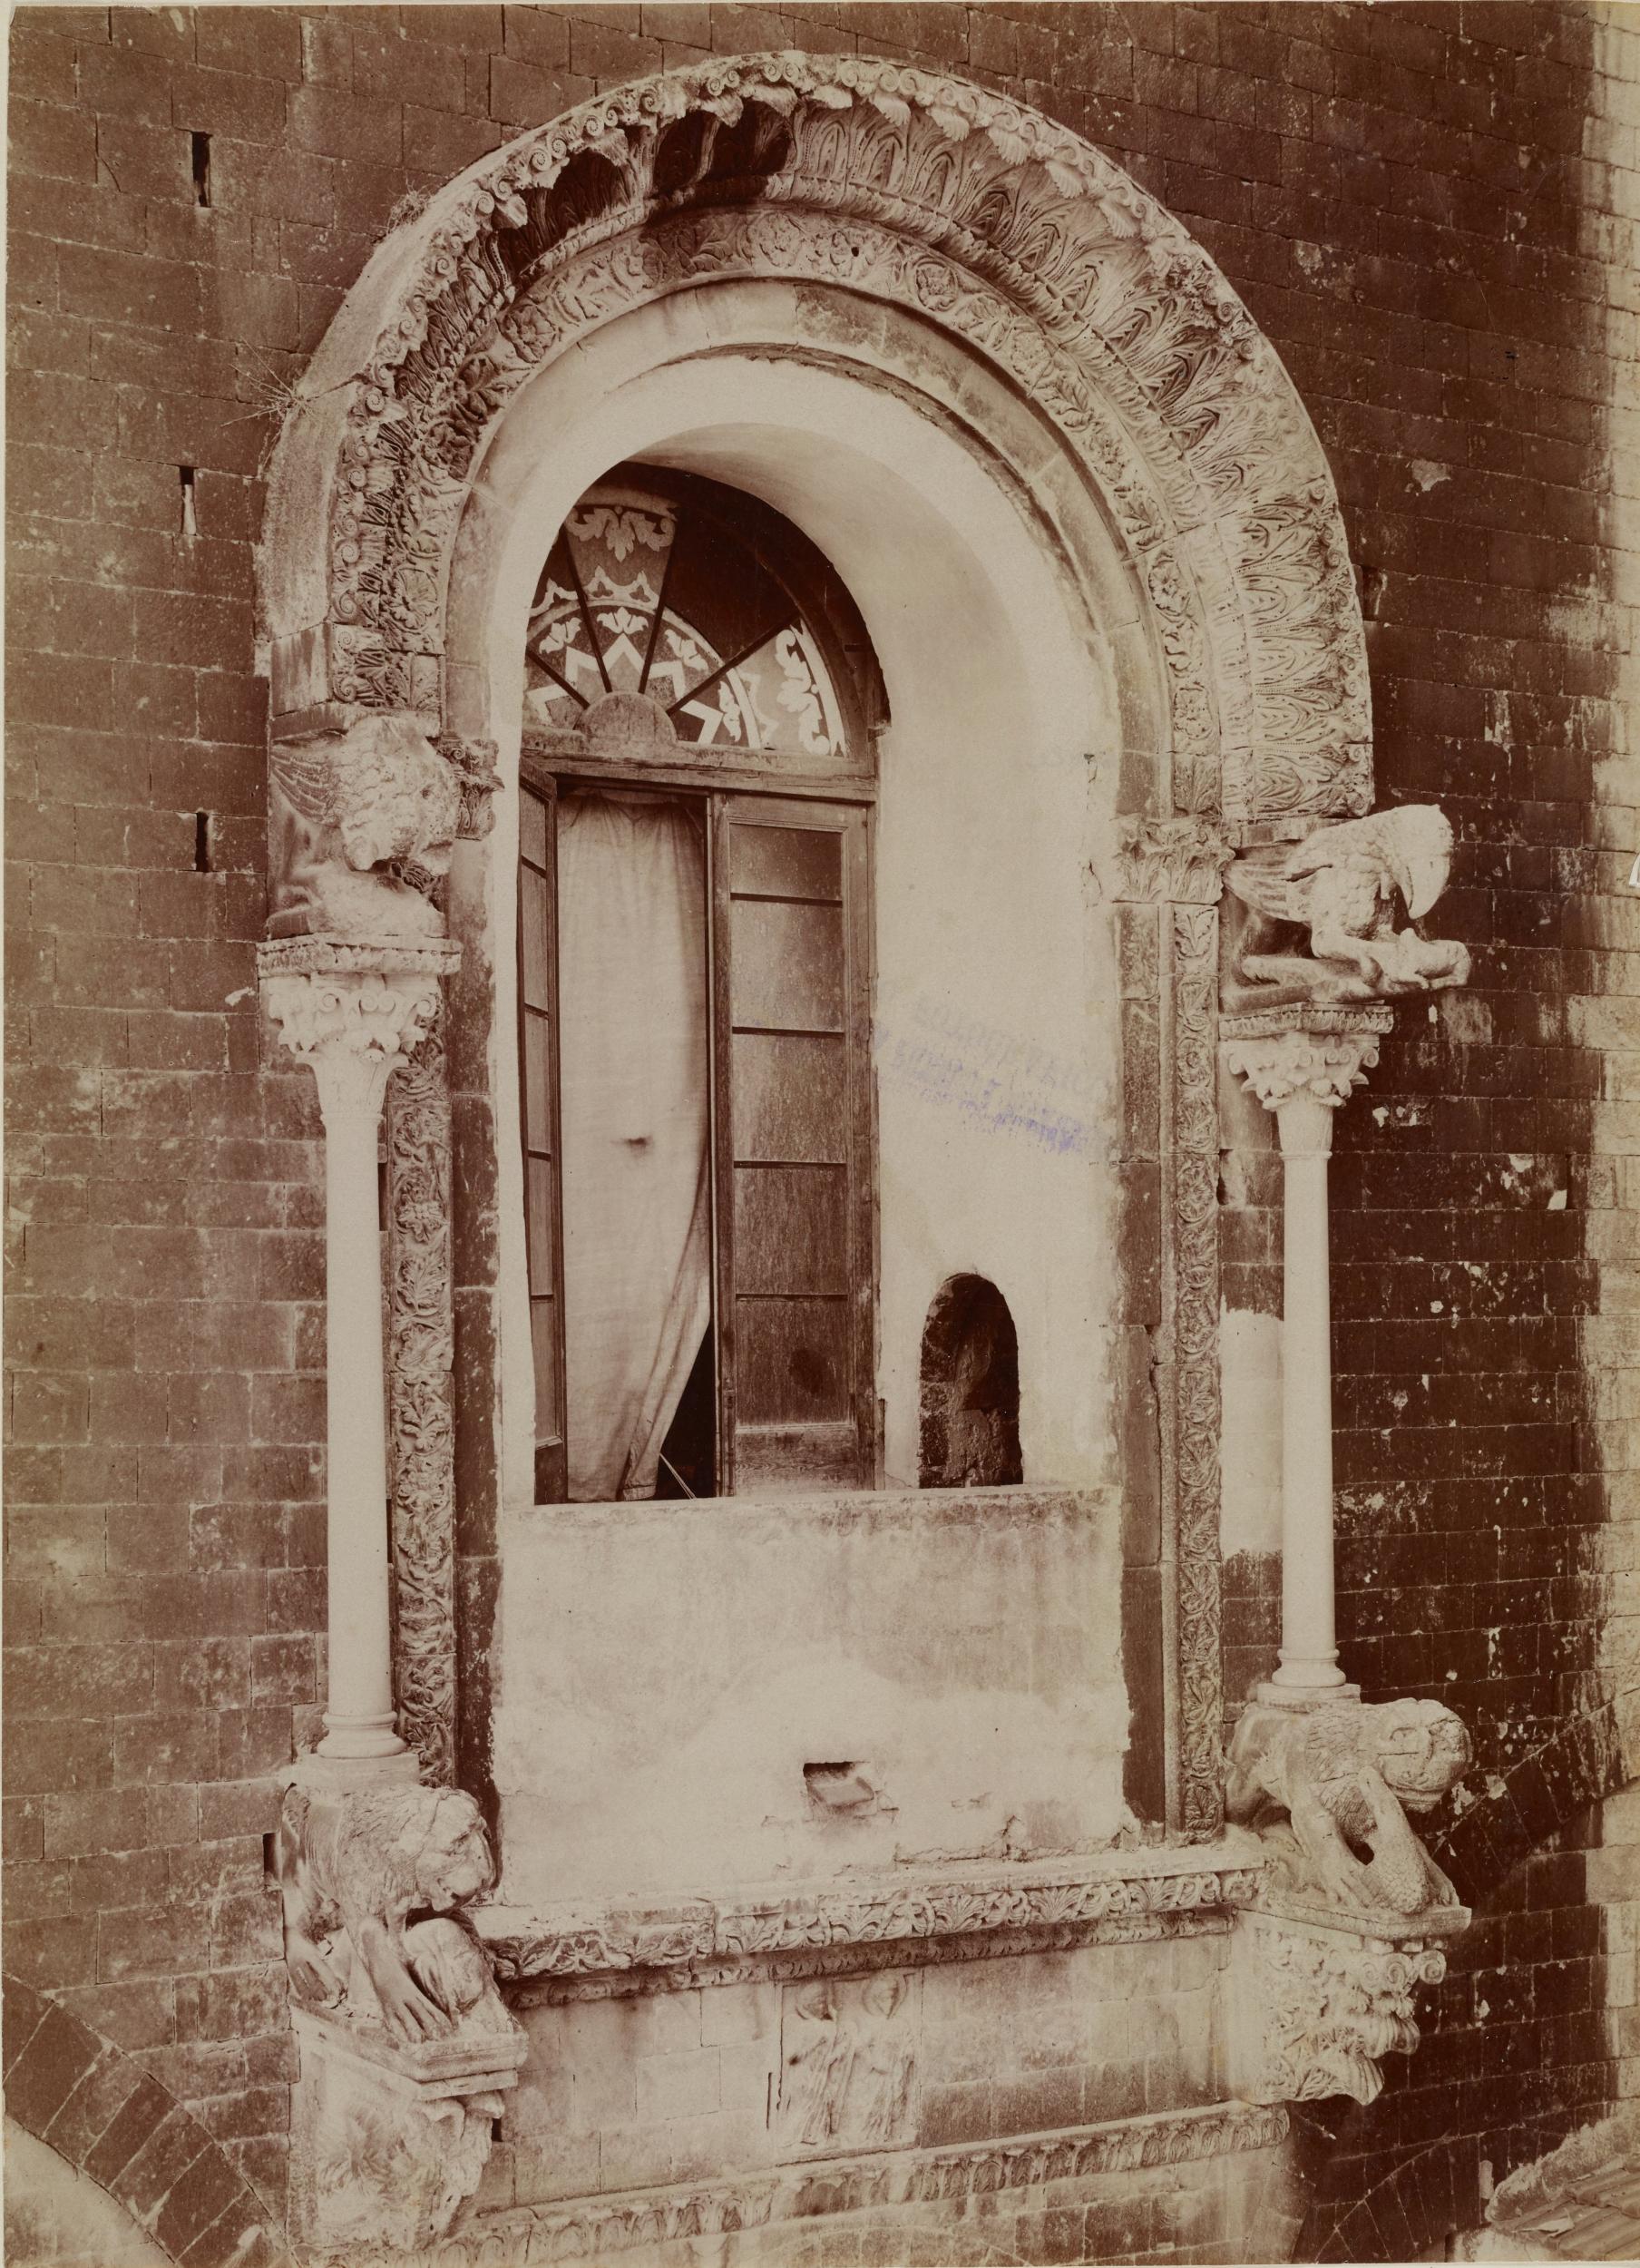 Fotografo non identificato, Bitonto - Cattedrale di S. Valentino, finestrone absidale della cattedrale - prima del restauri, 1876-1900, albumina/carta, MPI137854